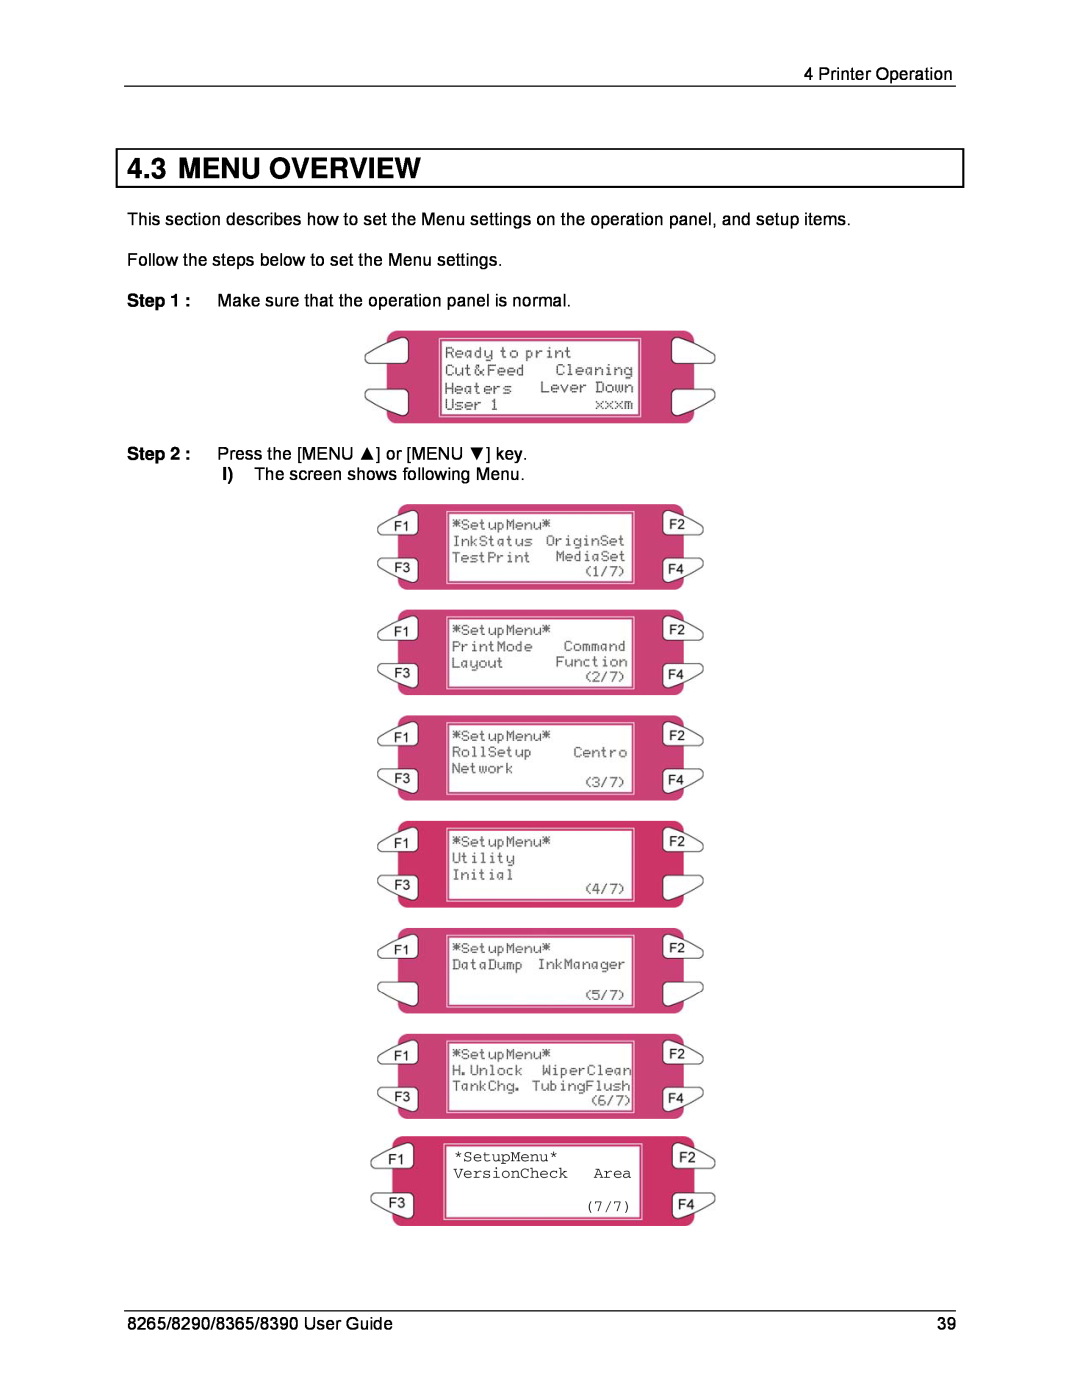 Xerox 8365, 8290, 8265, 8390 manual Menu Overview, SetupMenu* VersionCheck Area 7/7 